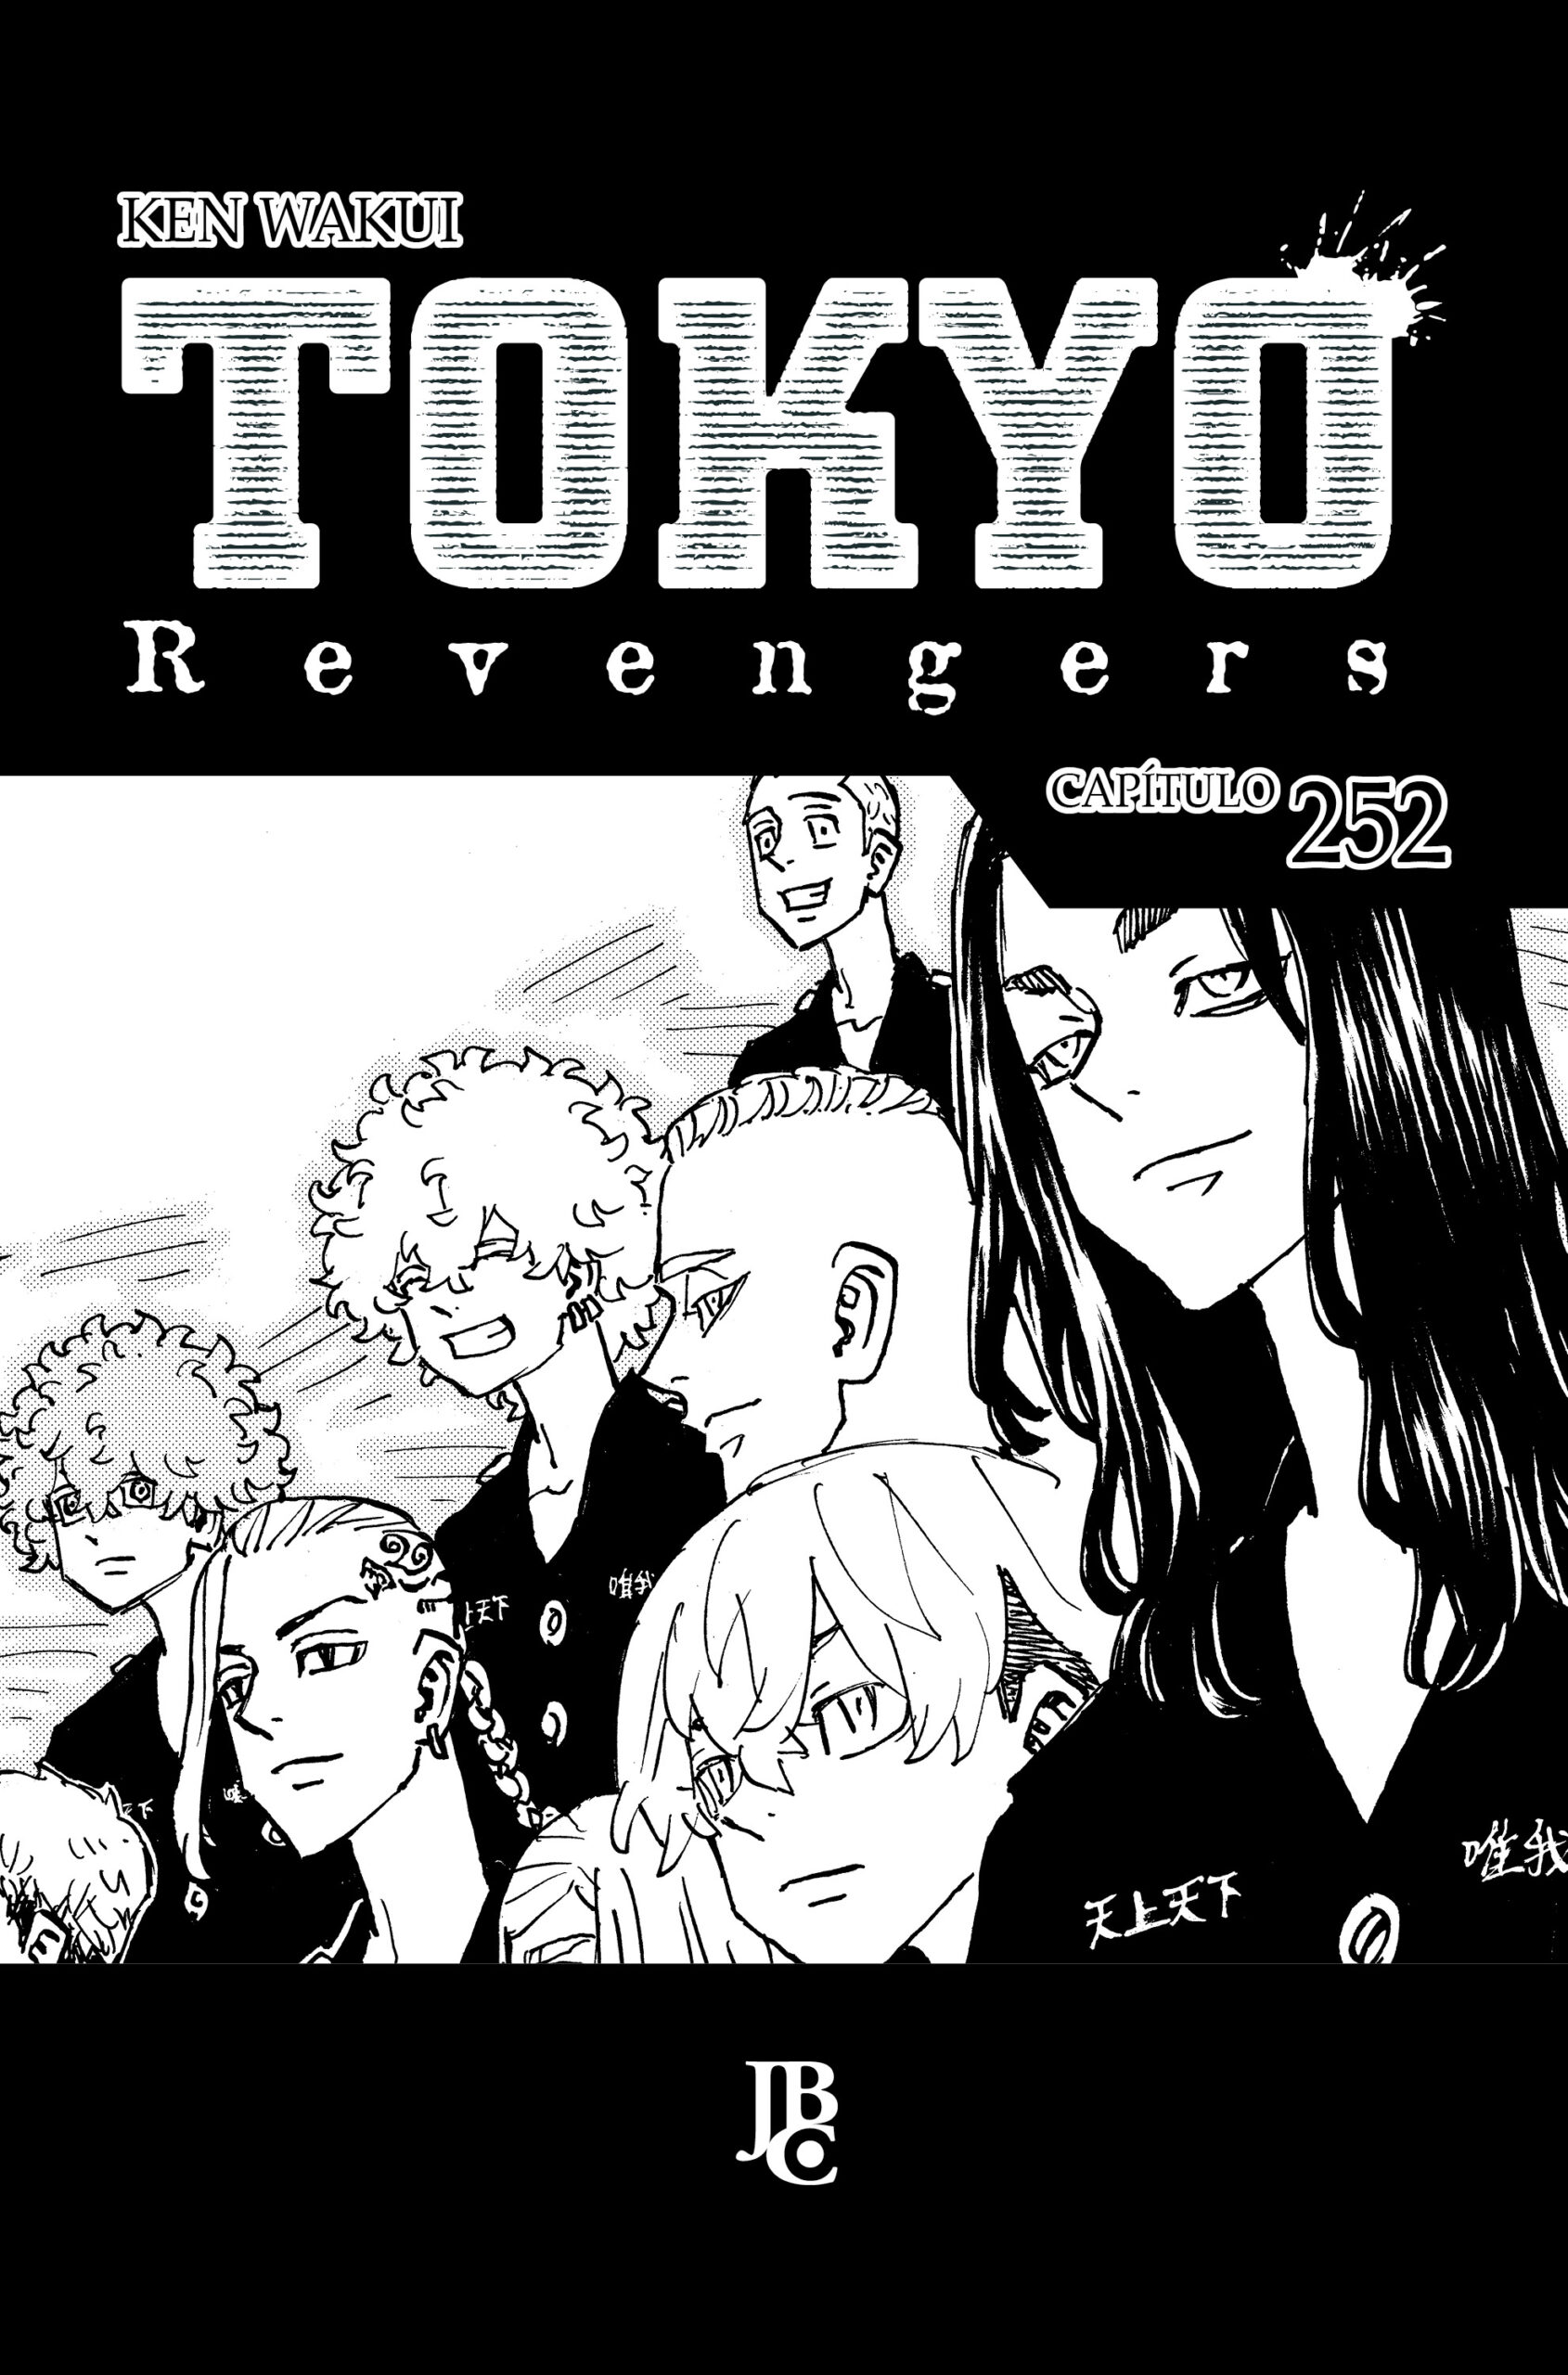 Tokyo Revengers 3ª Temporada: Como Assistir Os Episódios? - DESIGNE